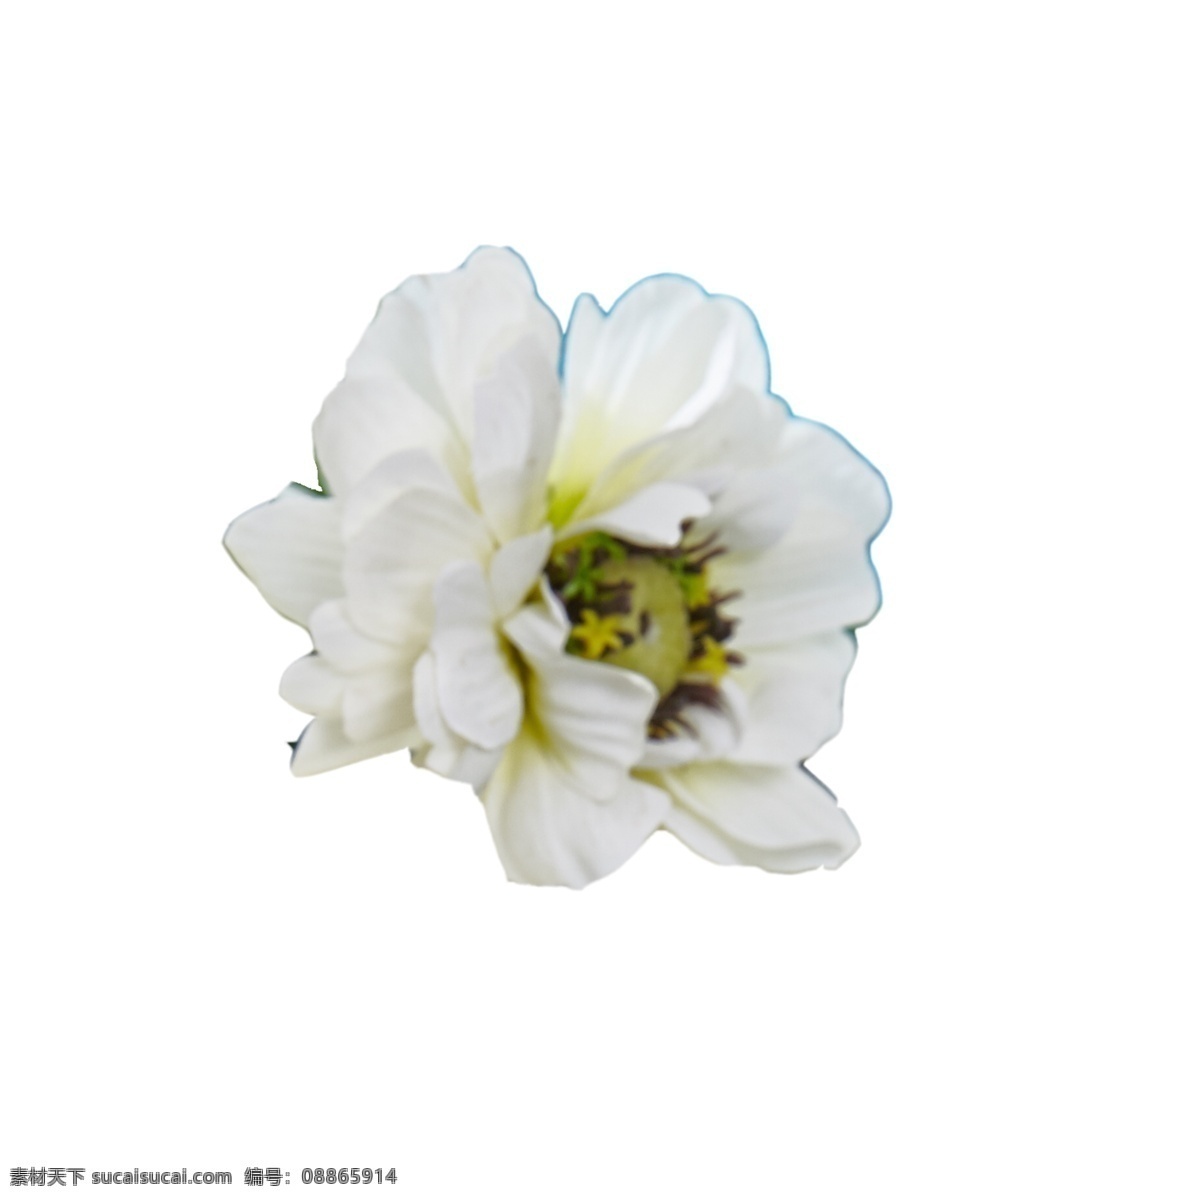 盛开 白色 鲜花 春天花朵 白色花朵 春天鲜花 盛开的鲜花 卡通插图 创意卡通下载 插图 png图下载